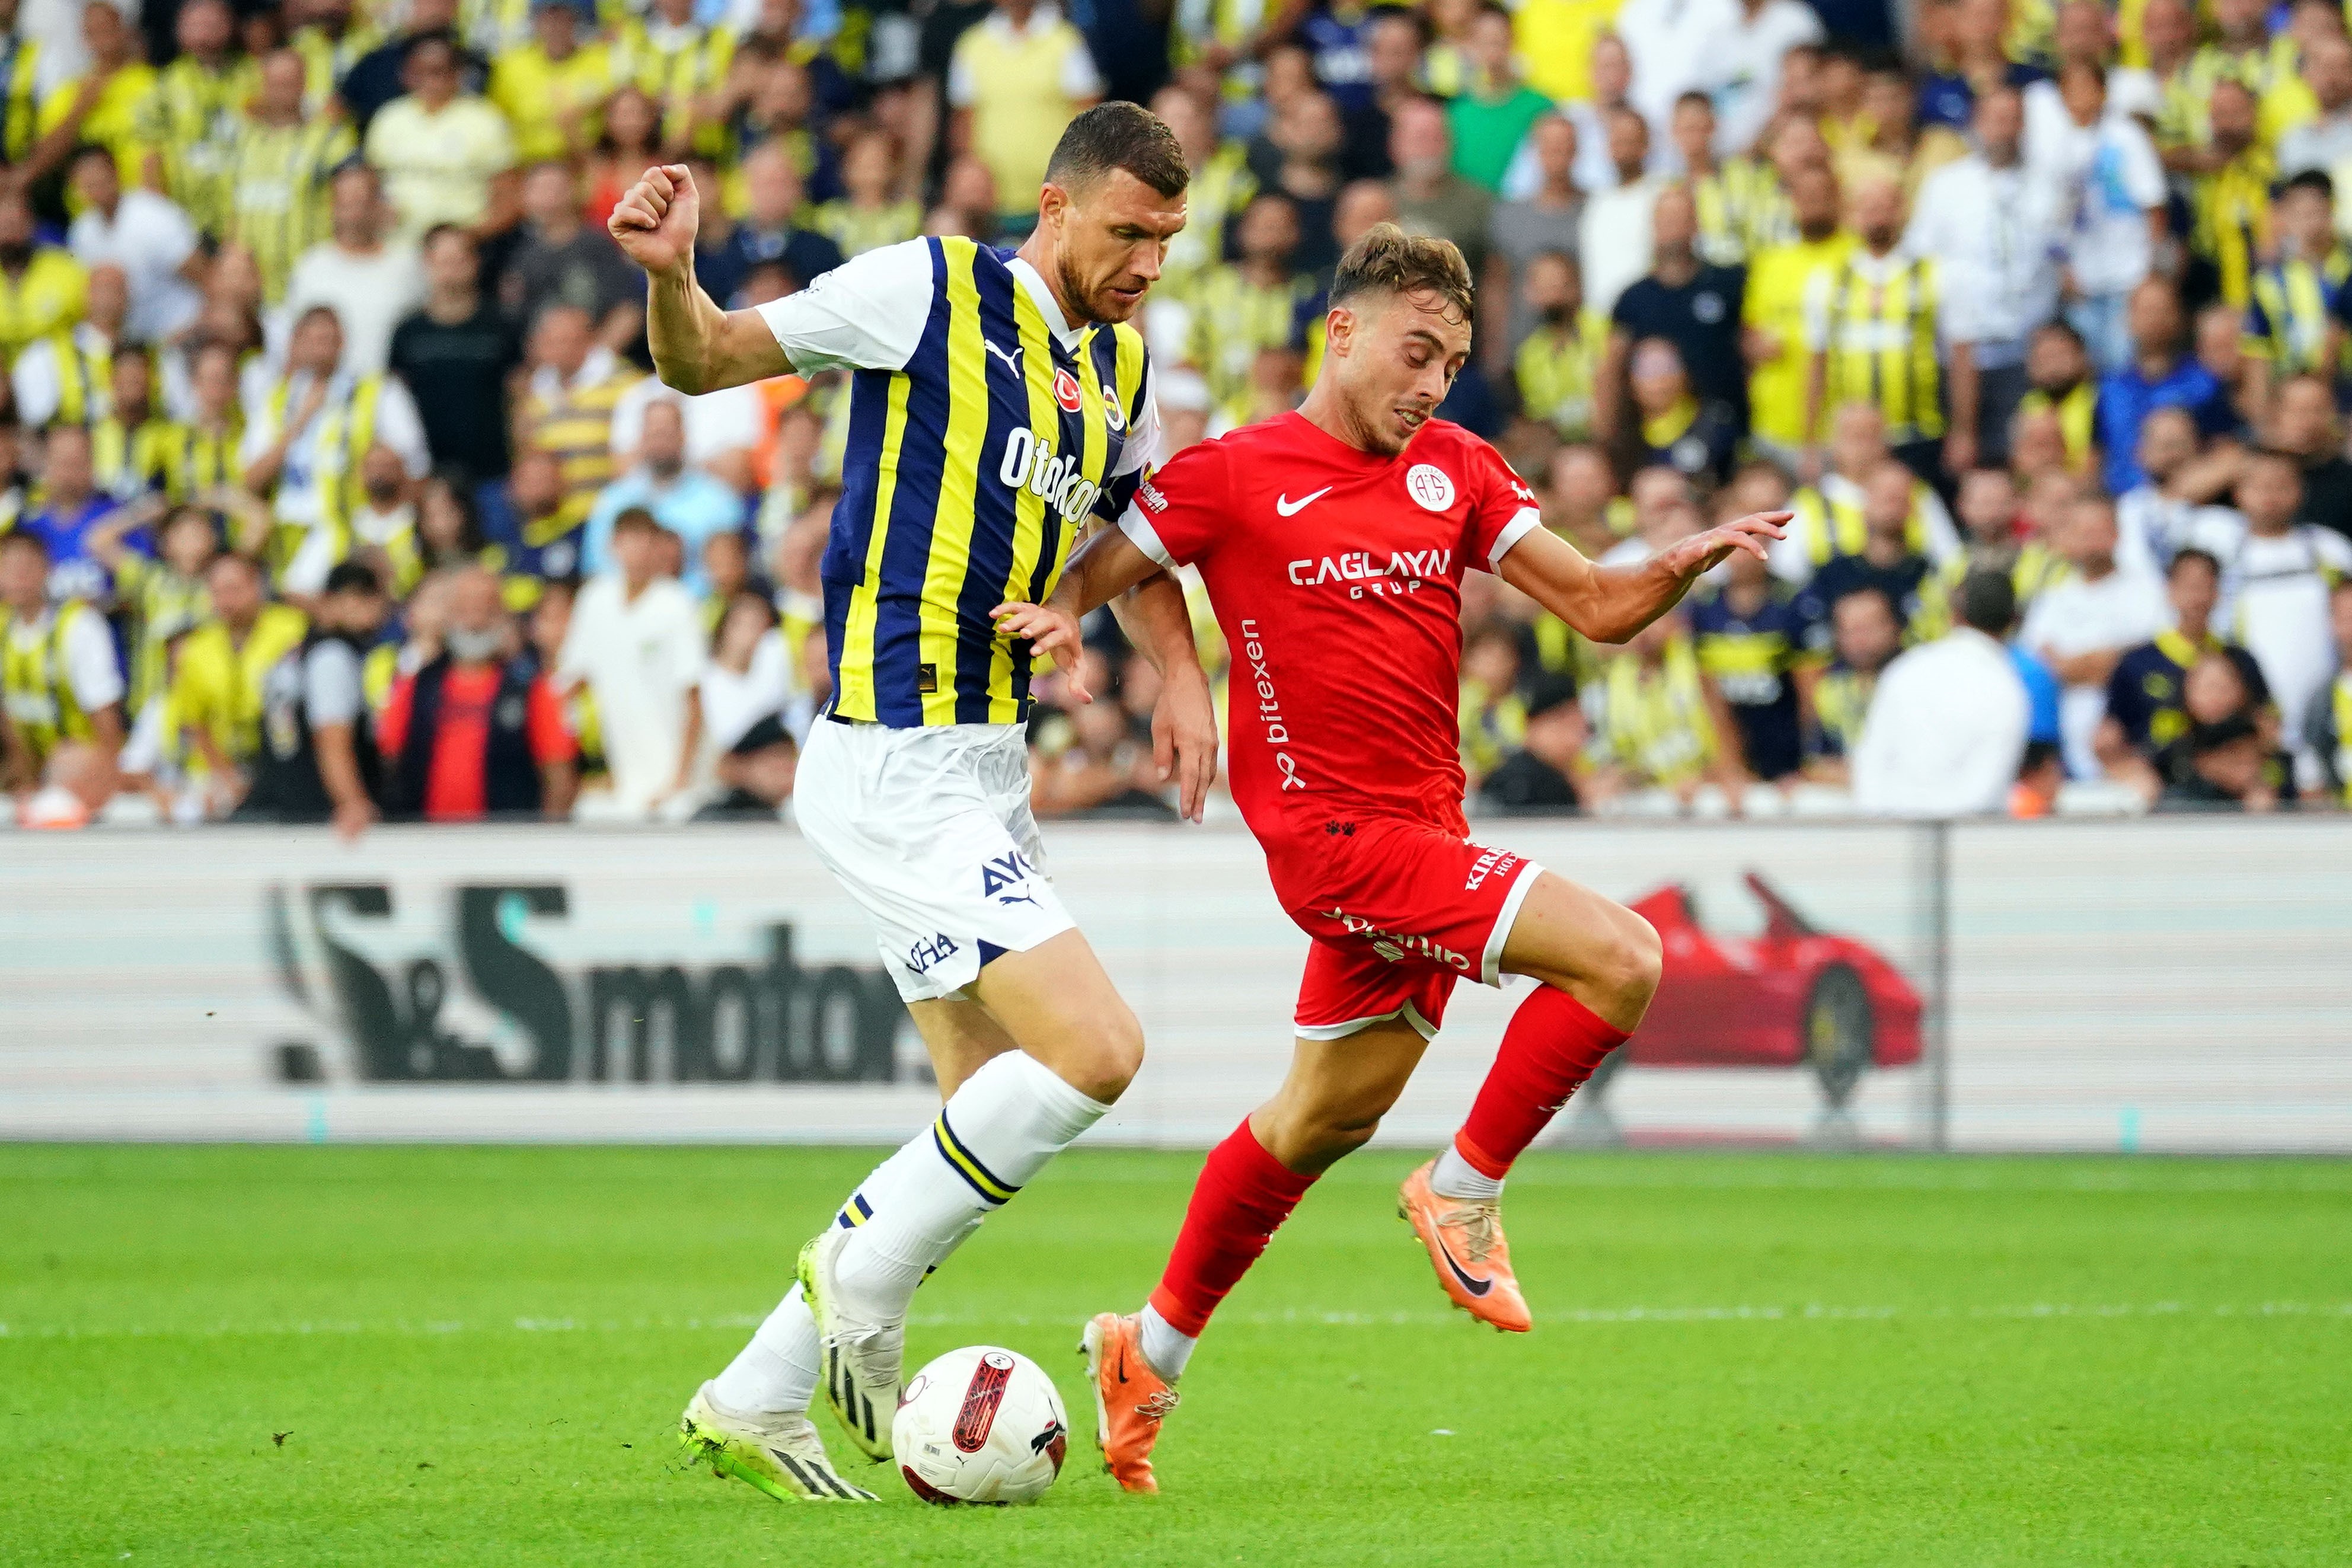 Antalyaspor Fenerbahçe ilk 11 maç kadroları nasıl olacak?-1